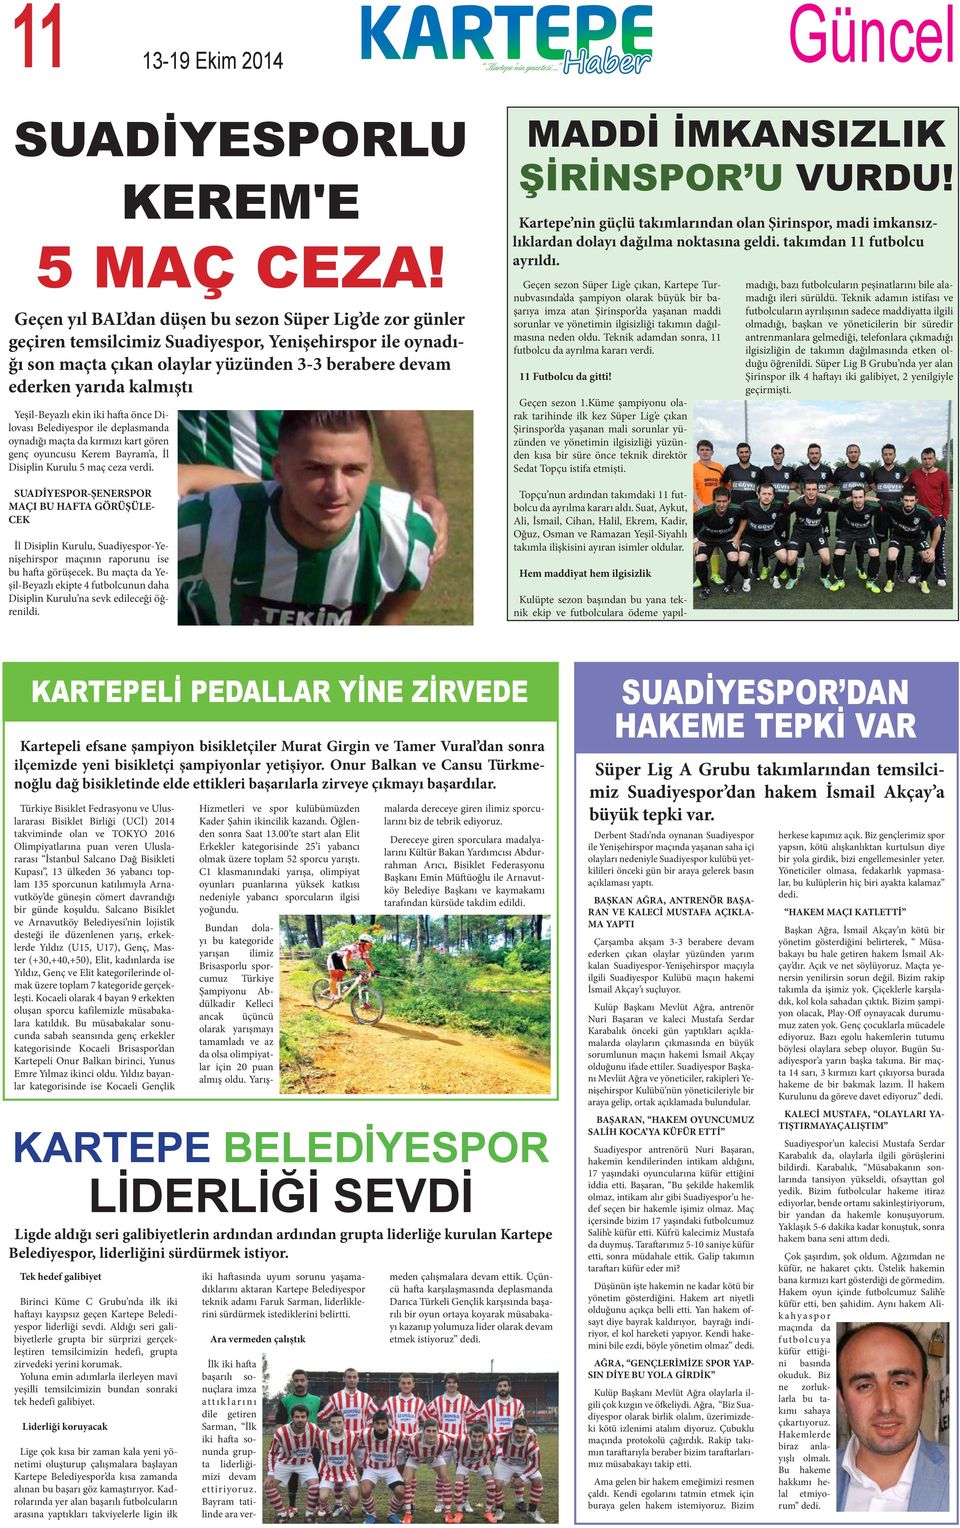 Yeşil-Beyazlı ekin iki hafta önce Dilovası Belediyespor ile deplasmanda oynadığı maçta da kırmızı kart gören genç oyuncusu Kerem Bayram a, İl Disiplin Kurulu 5 maç ceza verdi.